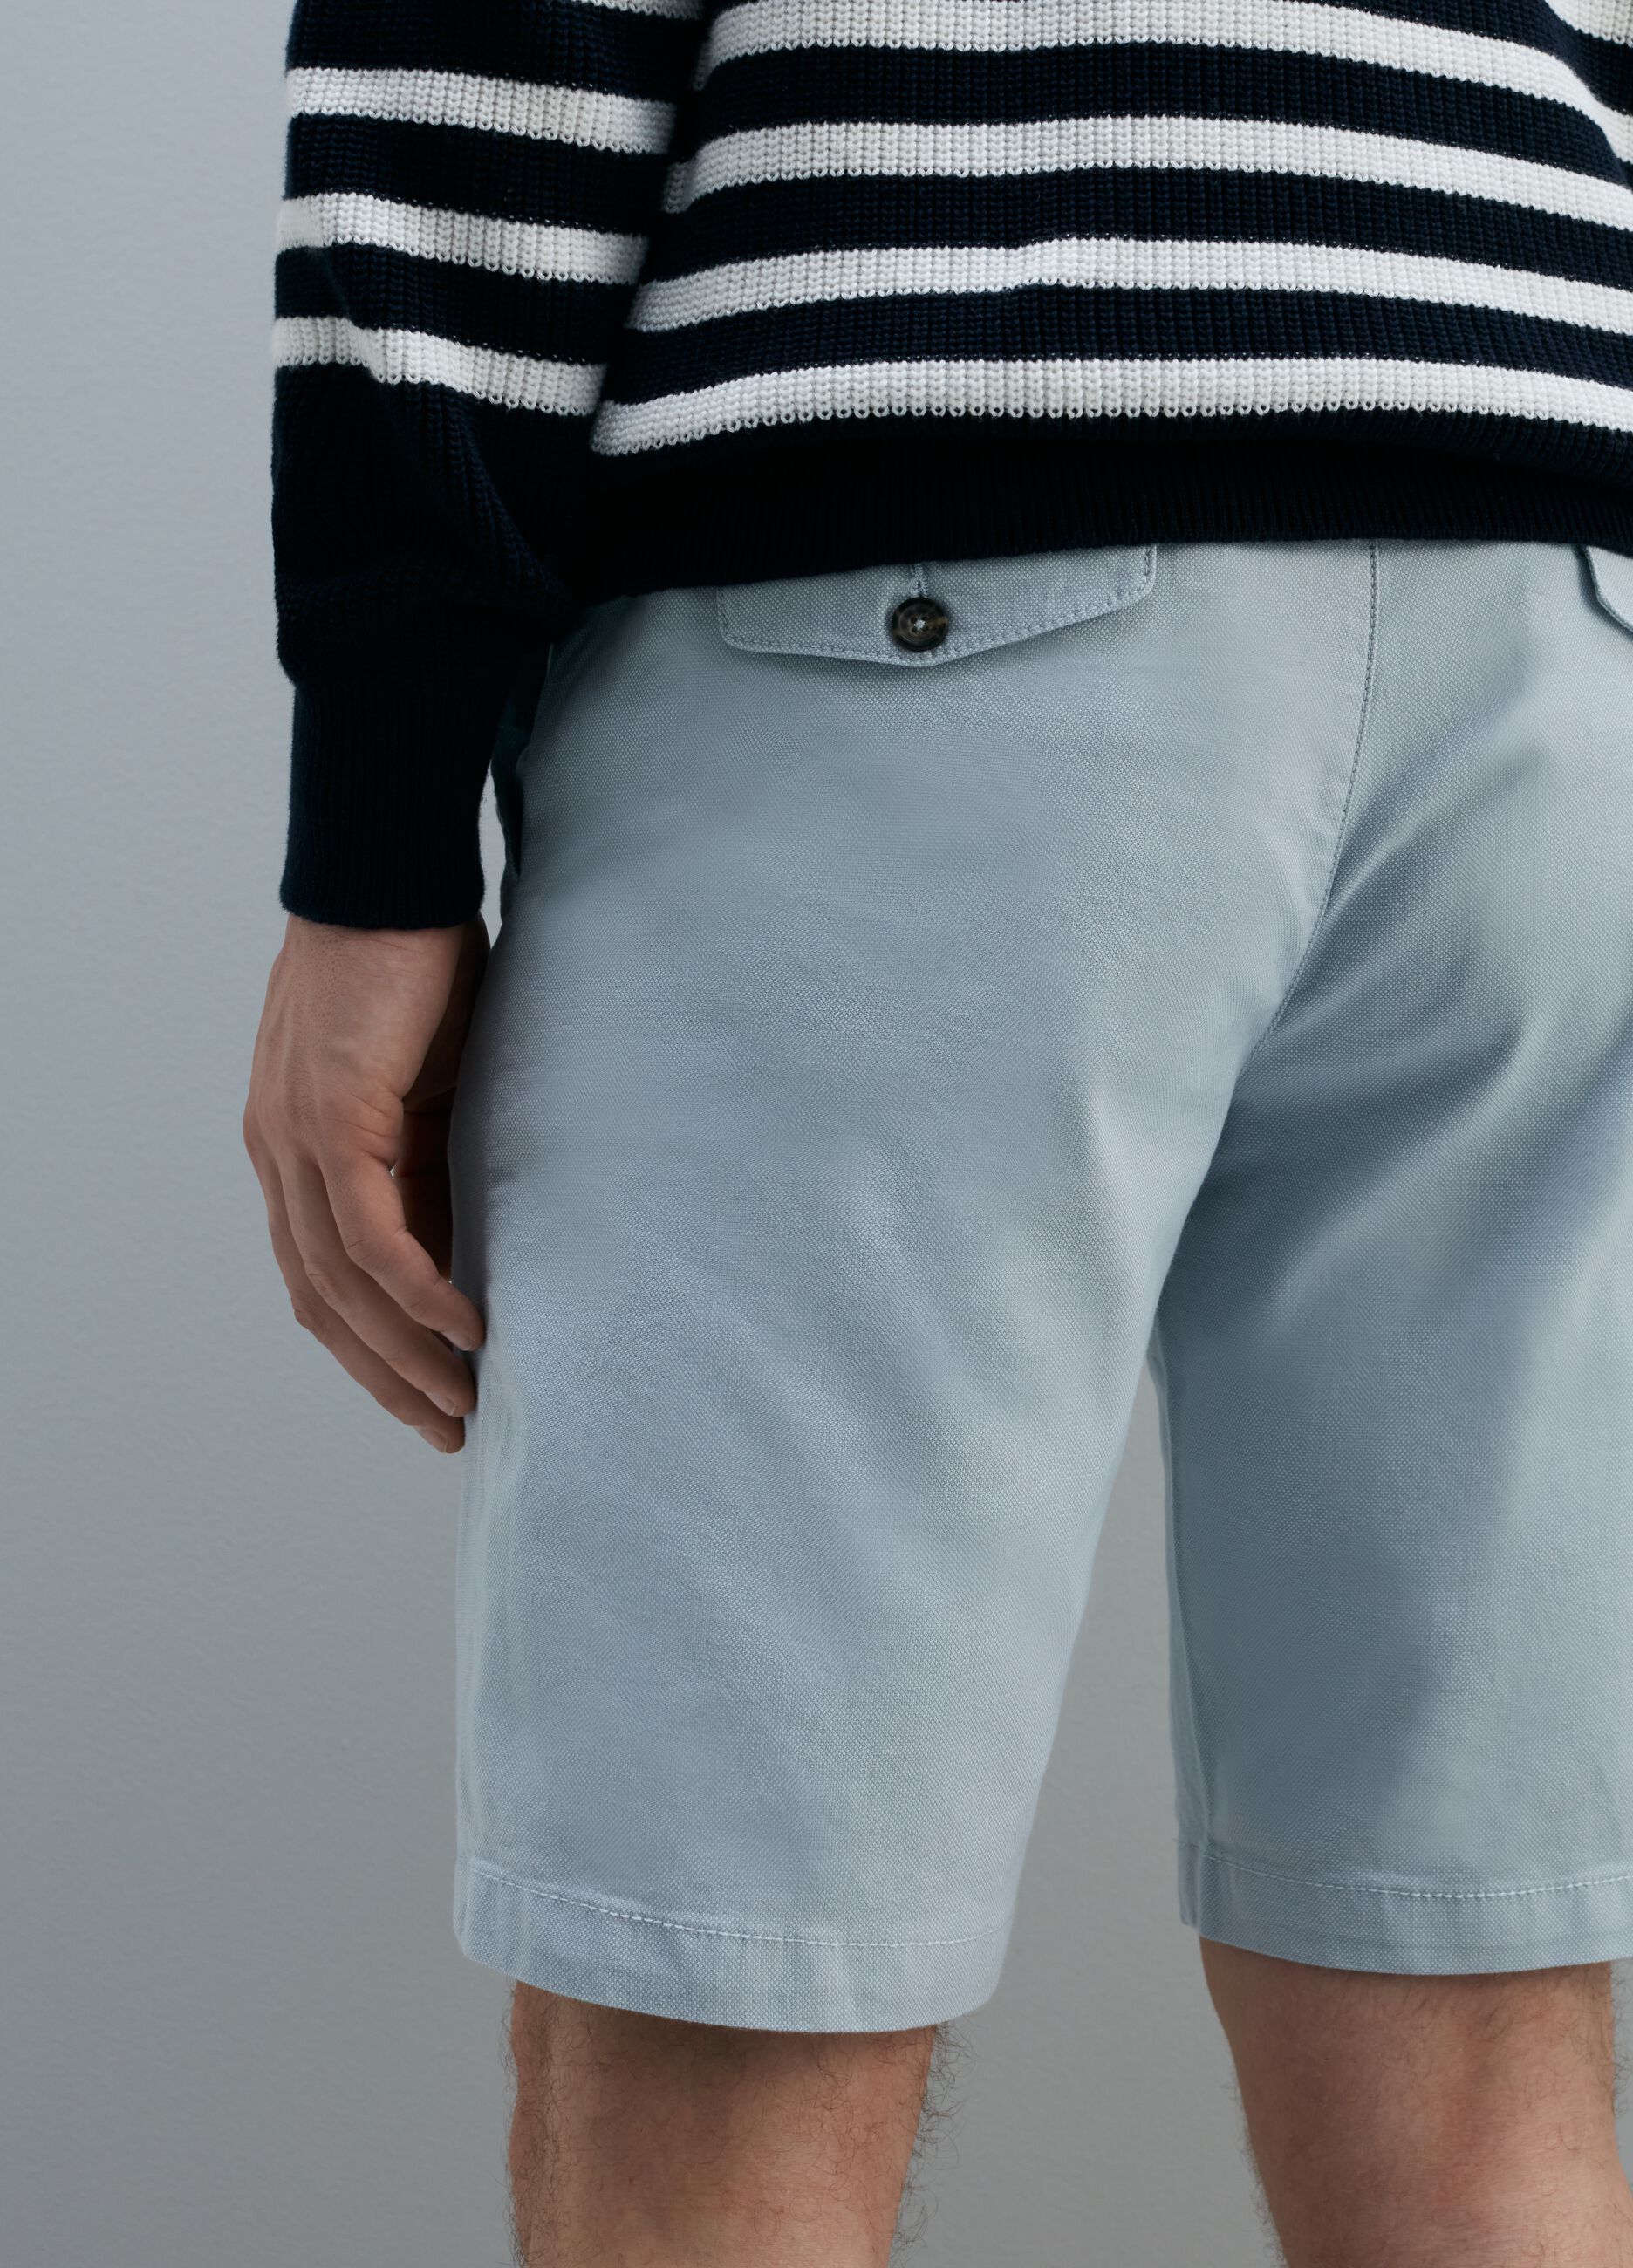 Slim-fit cotton chino Bermuda shorts in Oxford cotton